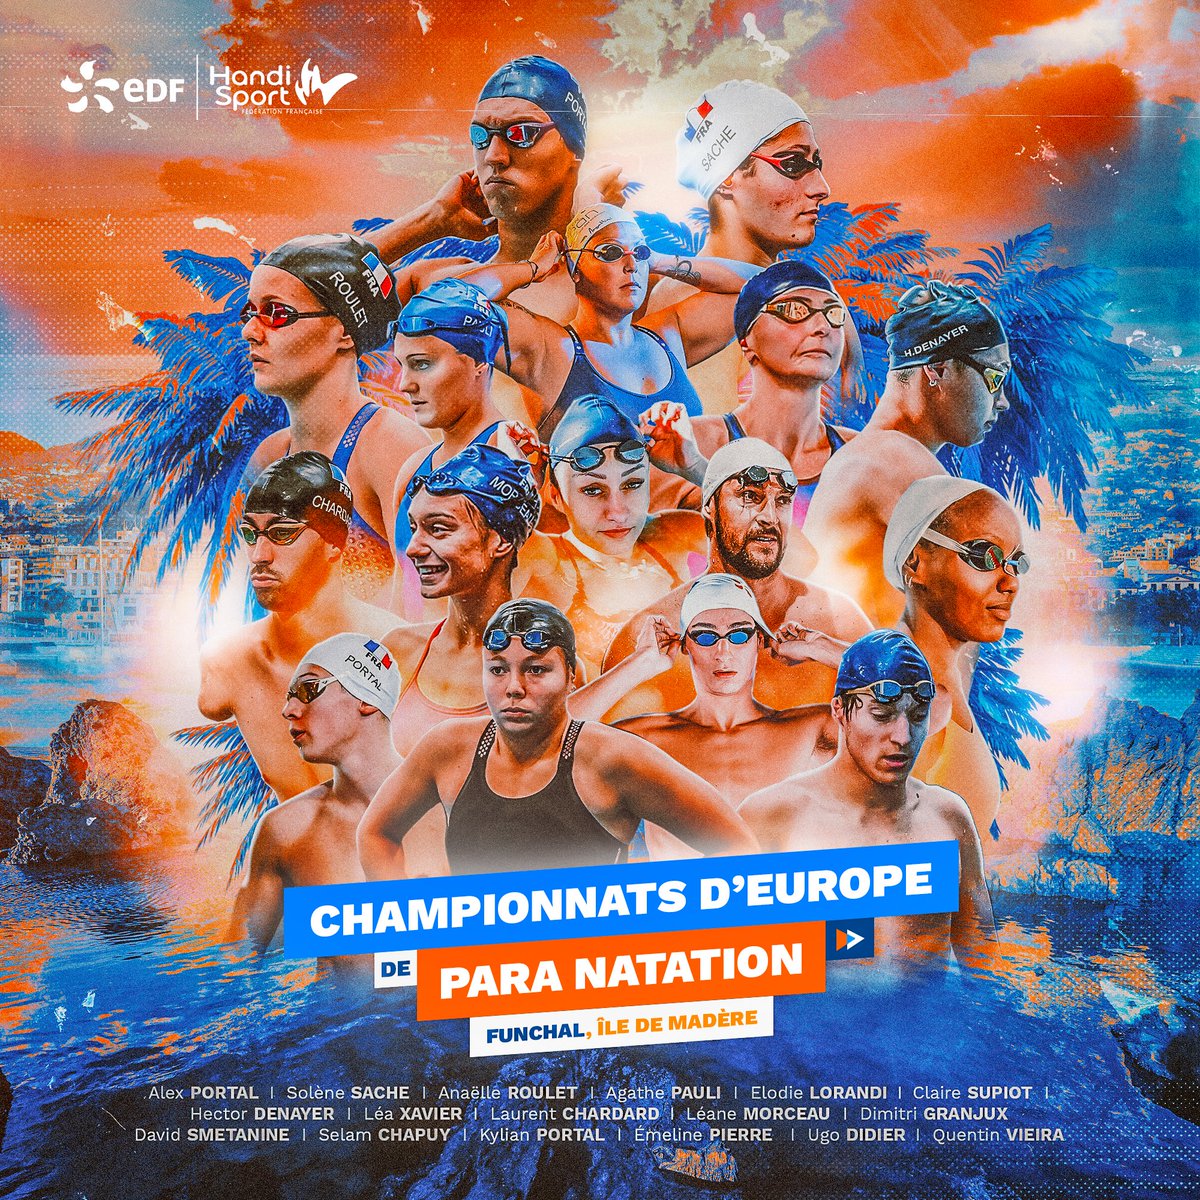 𝑹𝑬𝑨𝑫𝒀 𝑻𝑶 𝑹𝑼𝑴𝑩𝑳𝑬 💪 Nos para nageurs sont de retour dès dimanche pour les Championnats d’Europe de para natation à Madère 🏊🔥 On espère une pluie de médailles pour nos français 🥇 Transmettez leur votre énergie en commentaires ! ⚡ #EnergieduSport